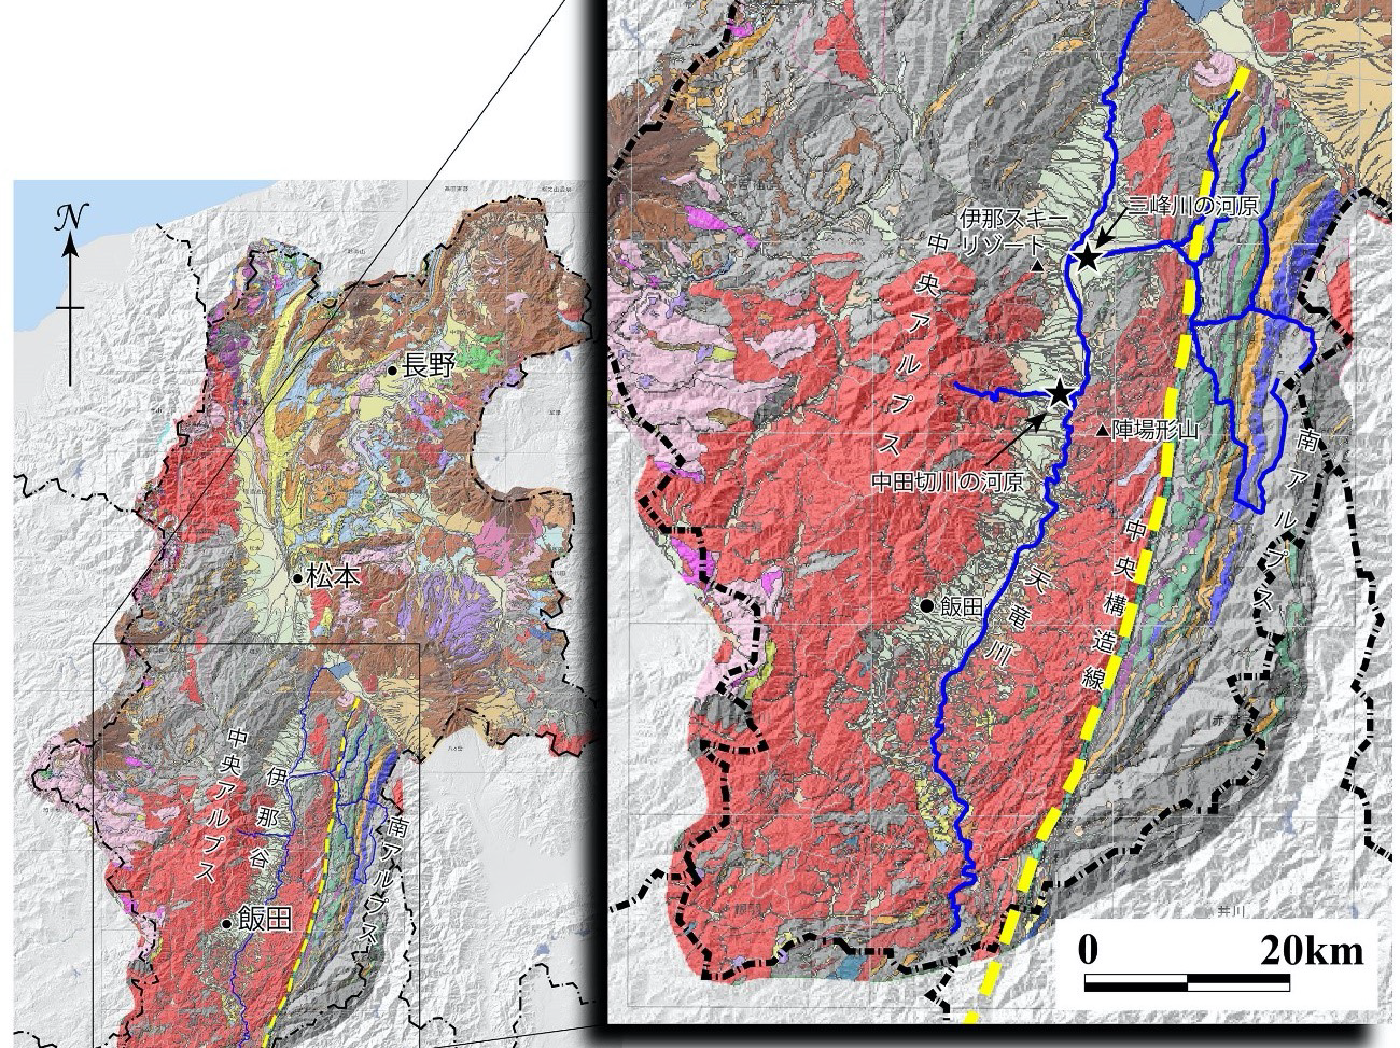 中⽥切川と三峰川の上流の地質図（⻑野県デジタル地質図2015を使⽤して作成）